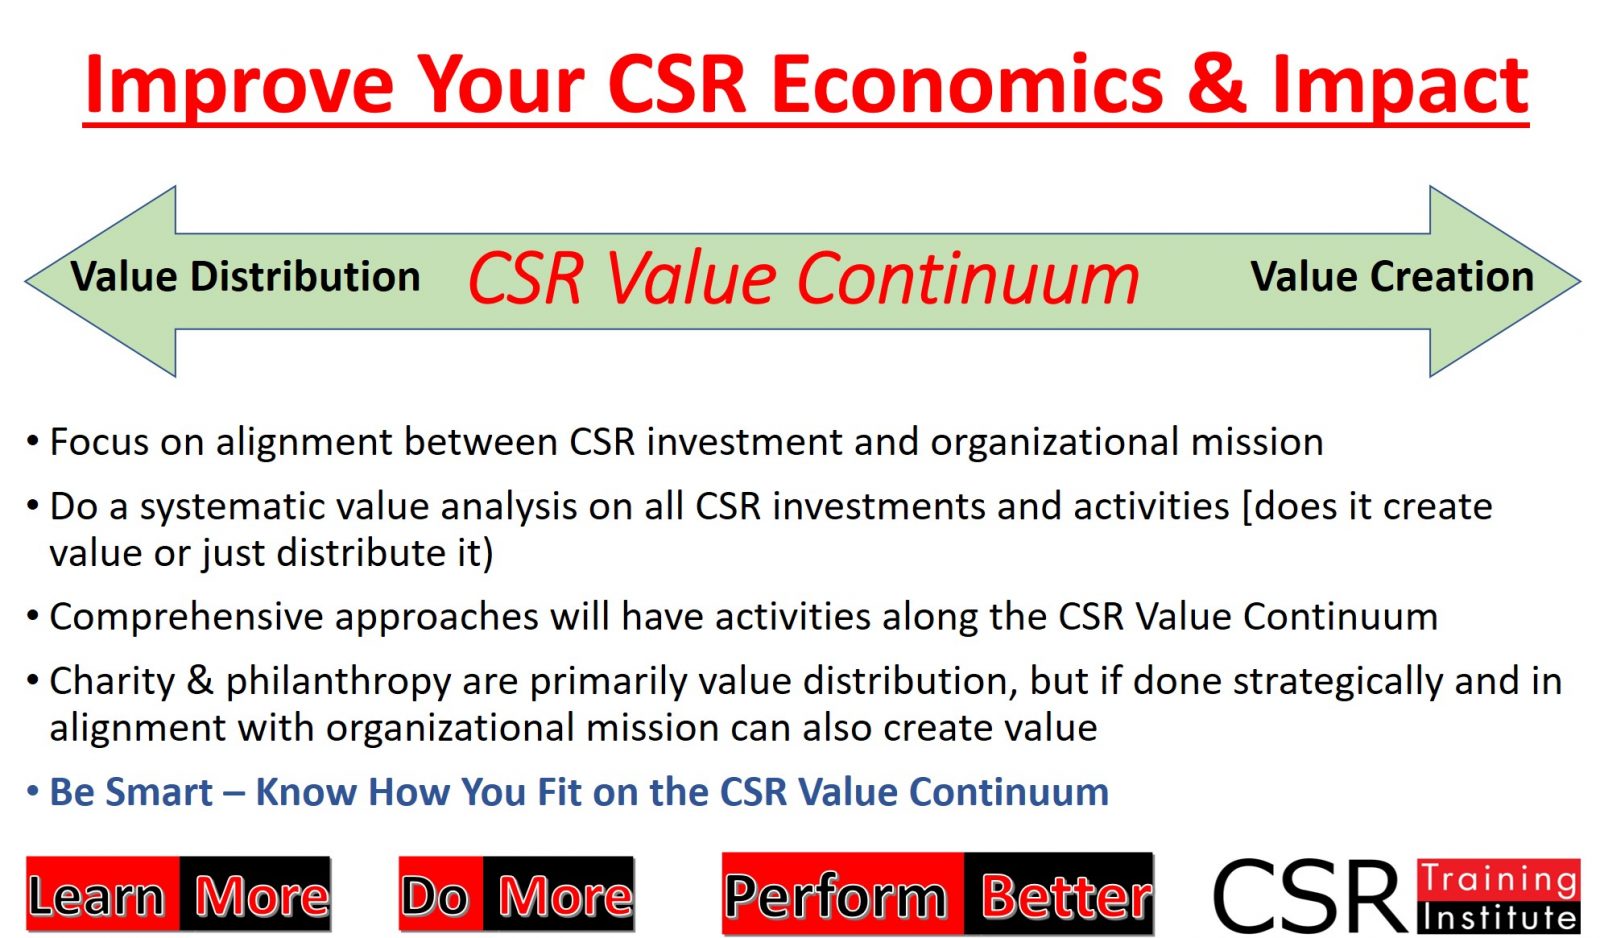 Improve your CSR economics and impact